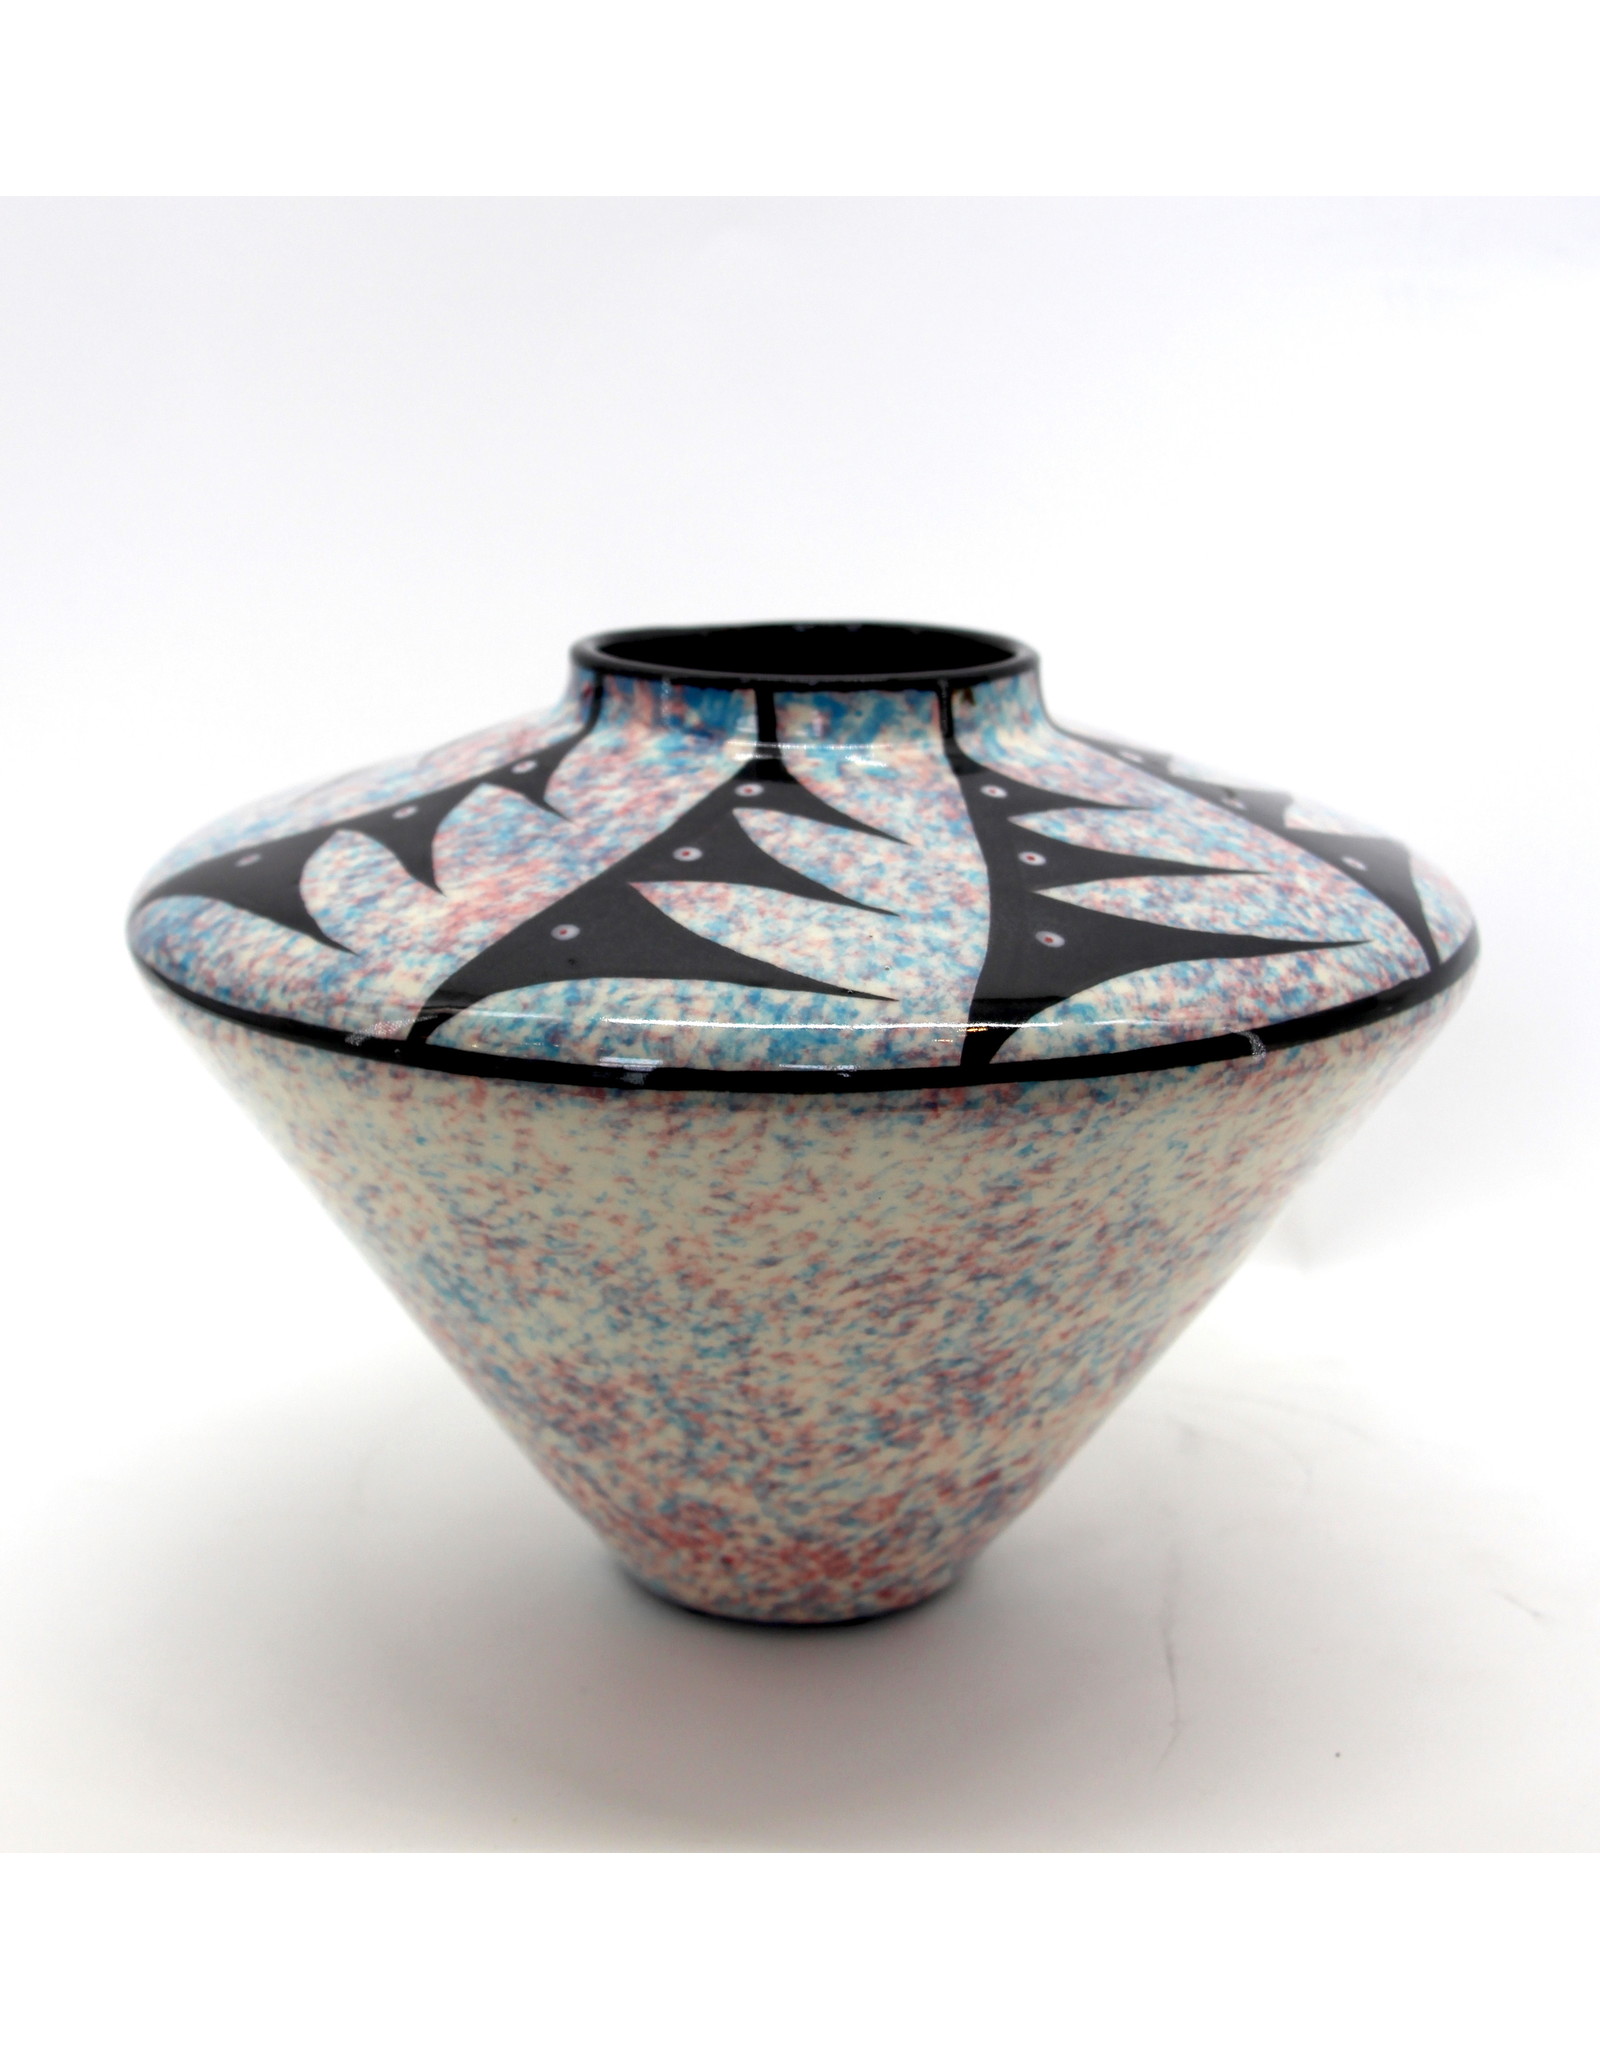 Sedona Vase by Veran Pardeahtan Multicolor - SV5